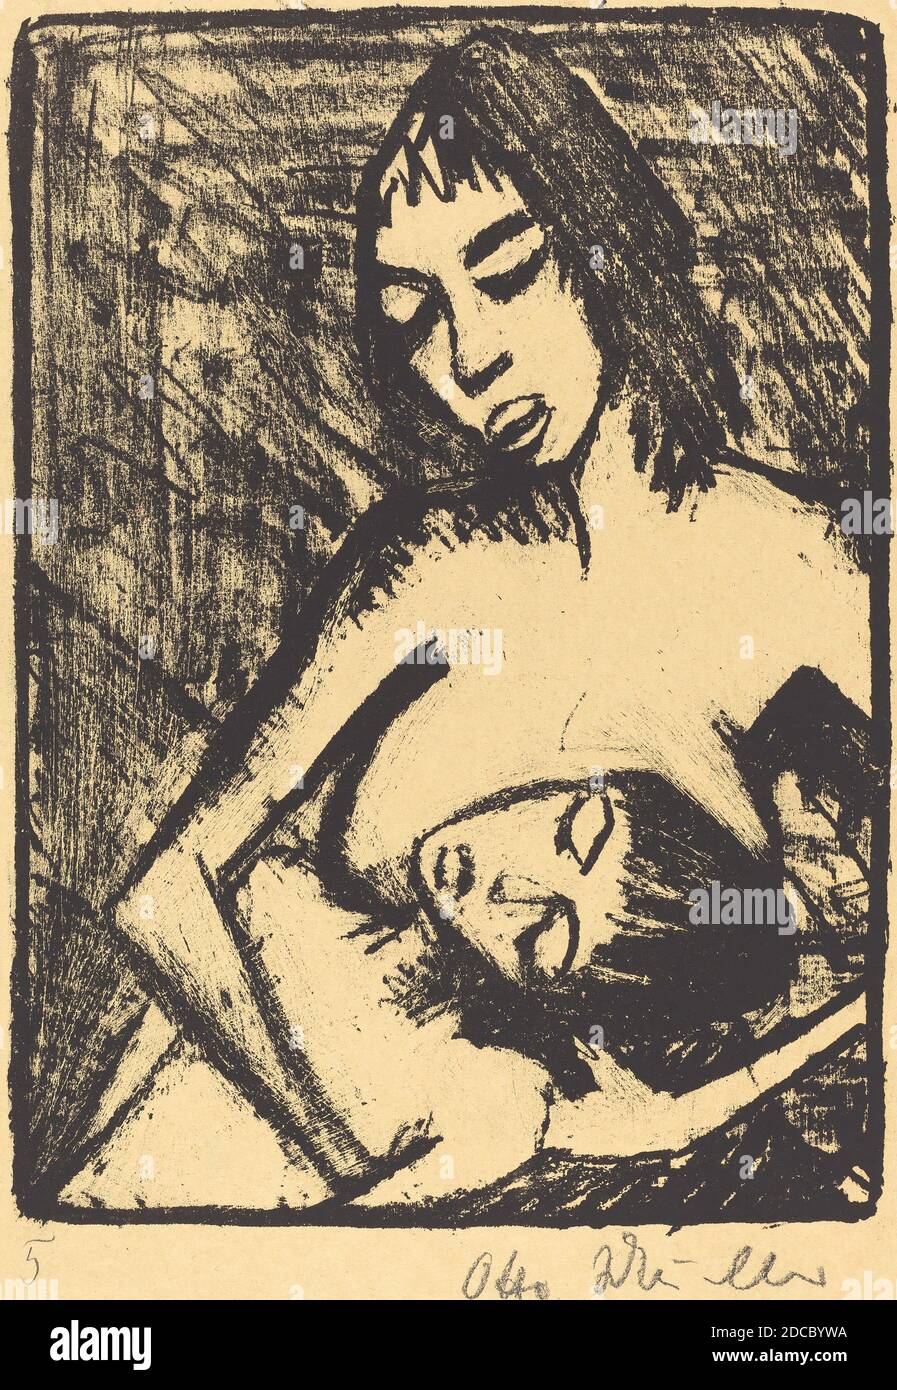 Otto Müller, (artista), tedesco, 1874 - 1930, Mother and Child (Mutter und Kind), probabilmente 1920, litografia, immagine: 25.1 × 18.5 cm (9 7/8 × 7 5/16 in.), foglio: 35.4 × 26.3 cm (13 15/16 × 10 3/8 in Foto Stock